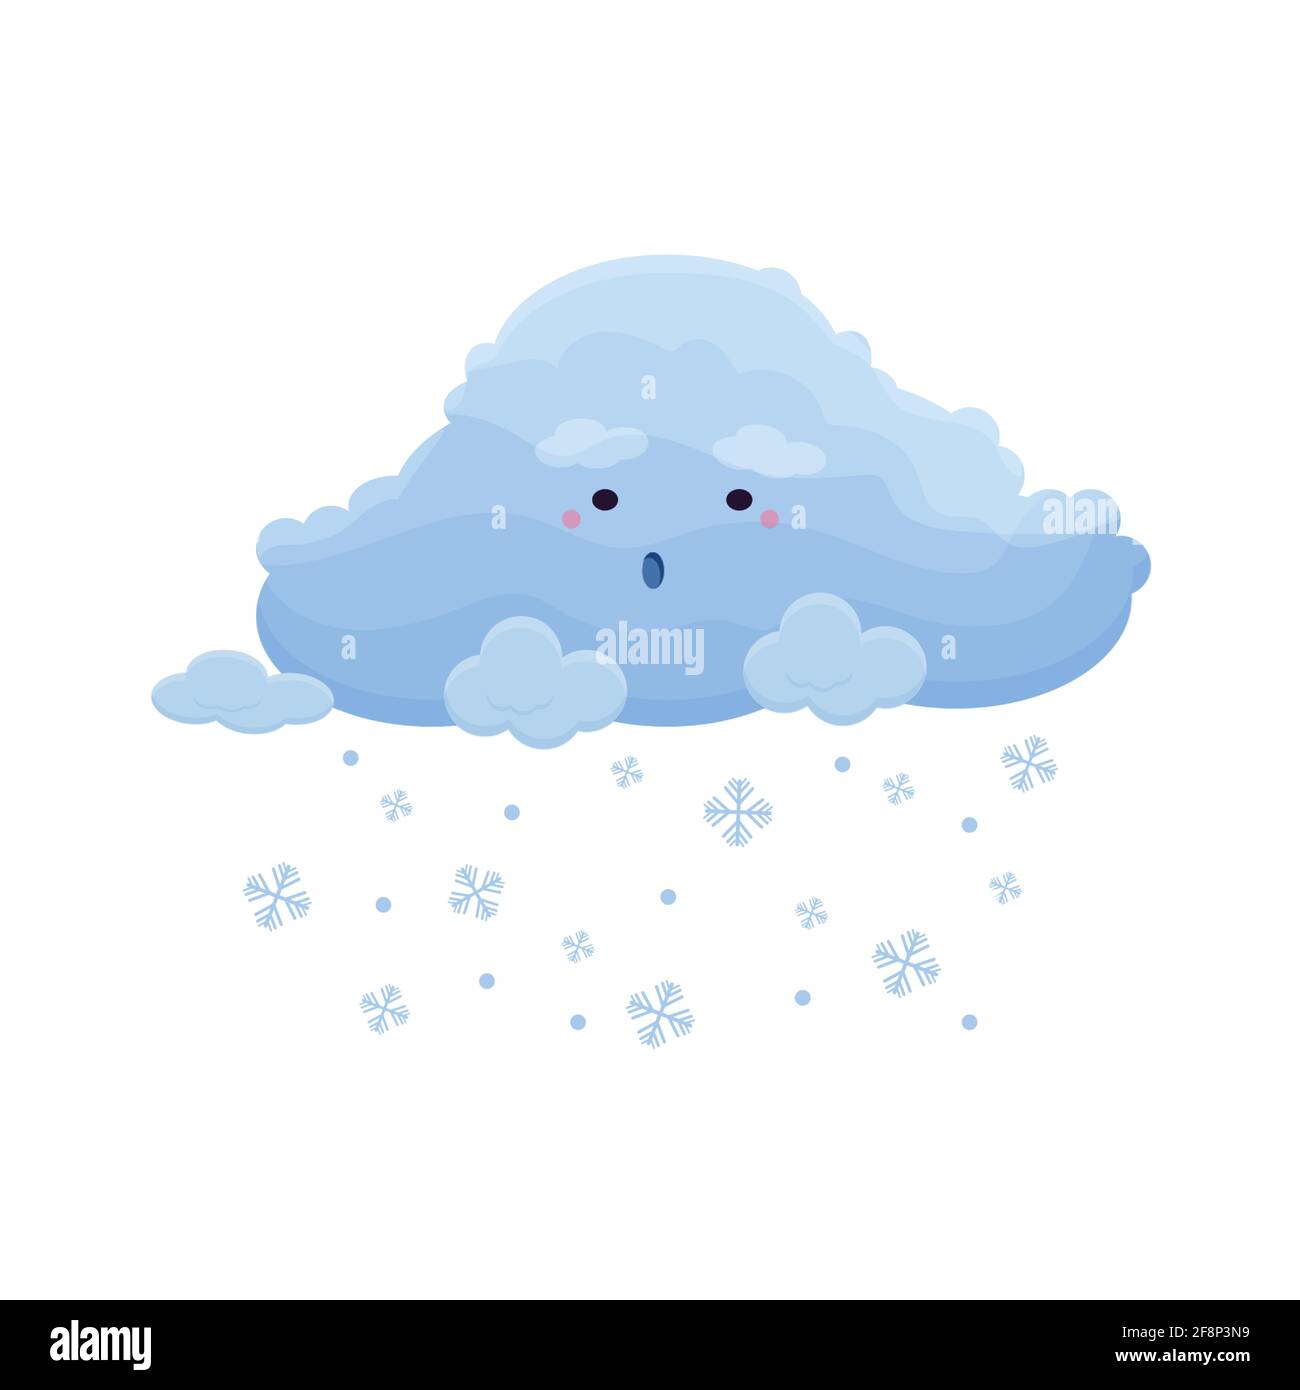 Simpatico icone meteo ambientato in stile piatto cartoon isolato su sfondo bianco. Illustrazione vettoriale di sole, pioggia, tempesta, neve, vento, luna, stella, arcobaleno. Personaggi divertenti. Illustrazione vettoriale Illustrazione Vettoriale